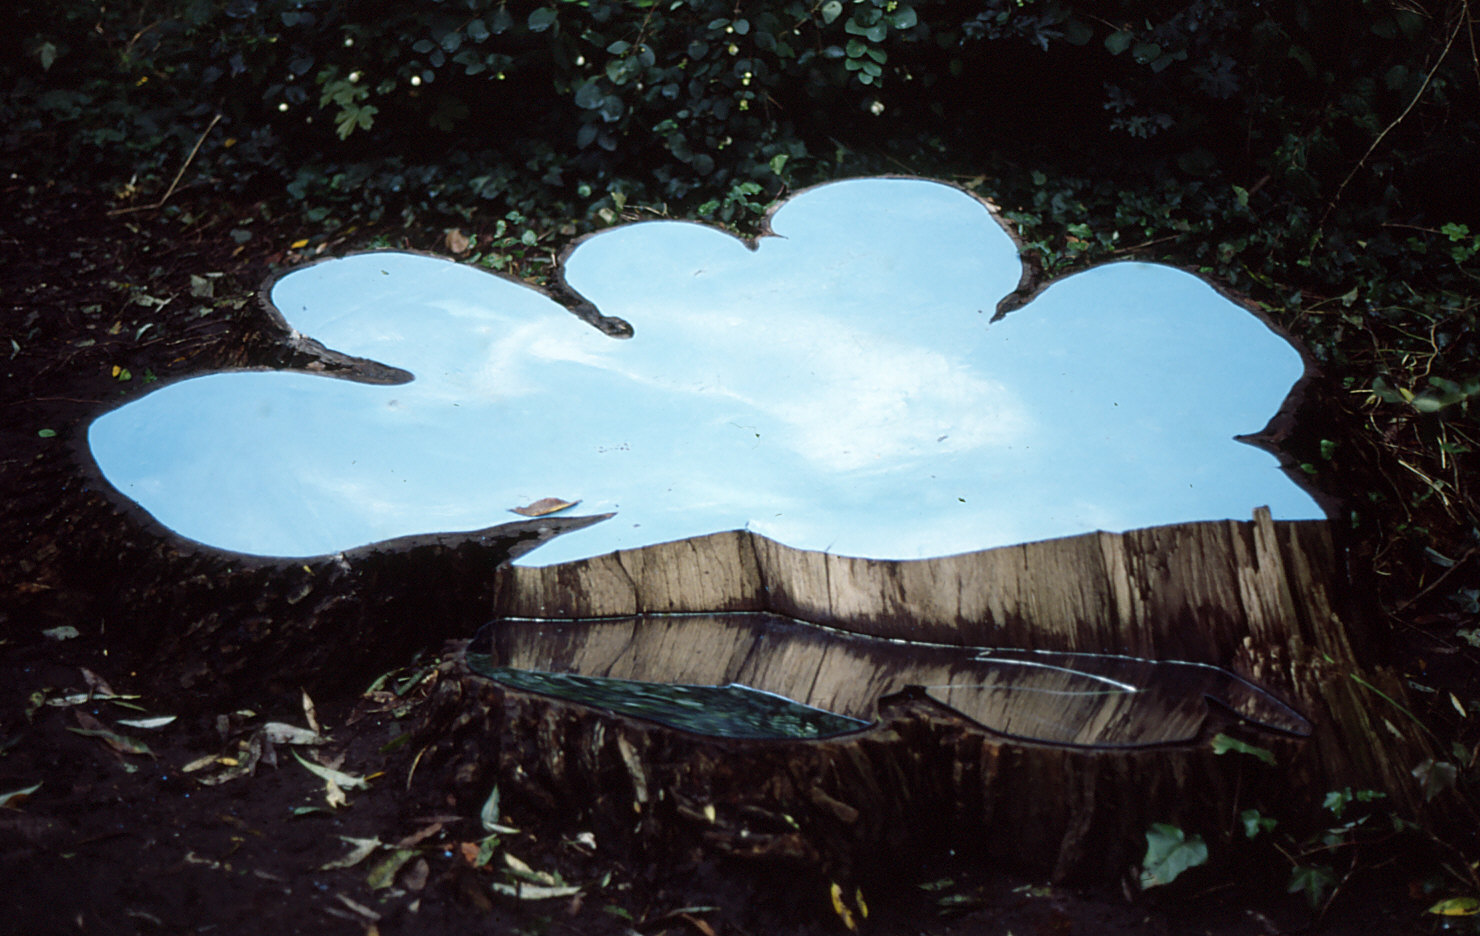 Ruimtelijk werk van beeldend kunstenaar Saskia Zwiers met de titel Hemelhout gemaakt voor de tentoonstelling Stadsparadijs in het Noorderplantsoen in Groningen in 1993